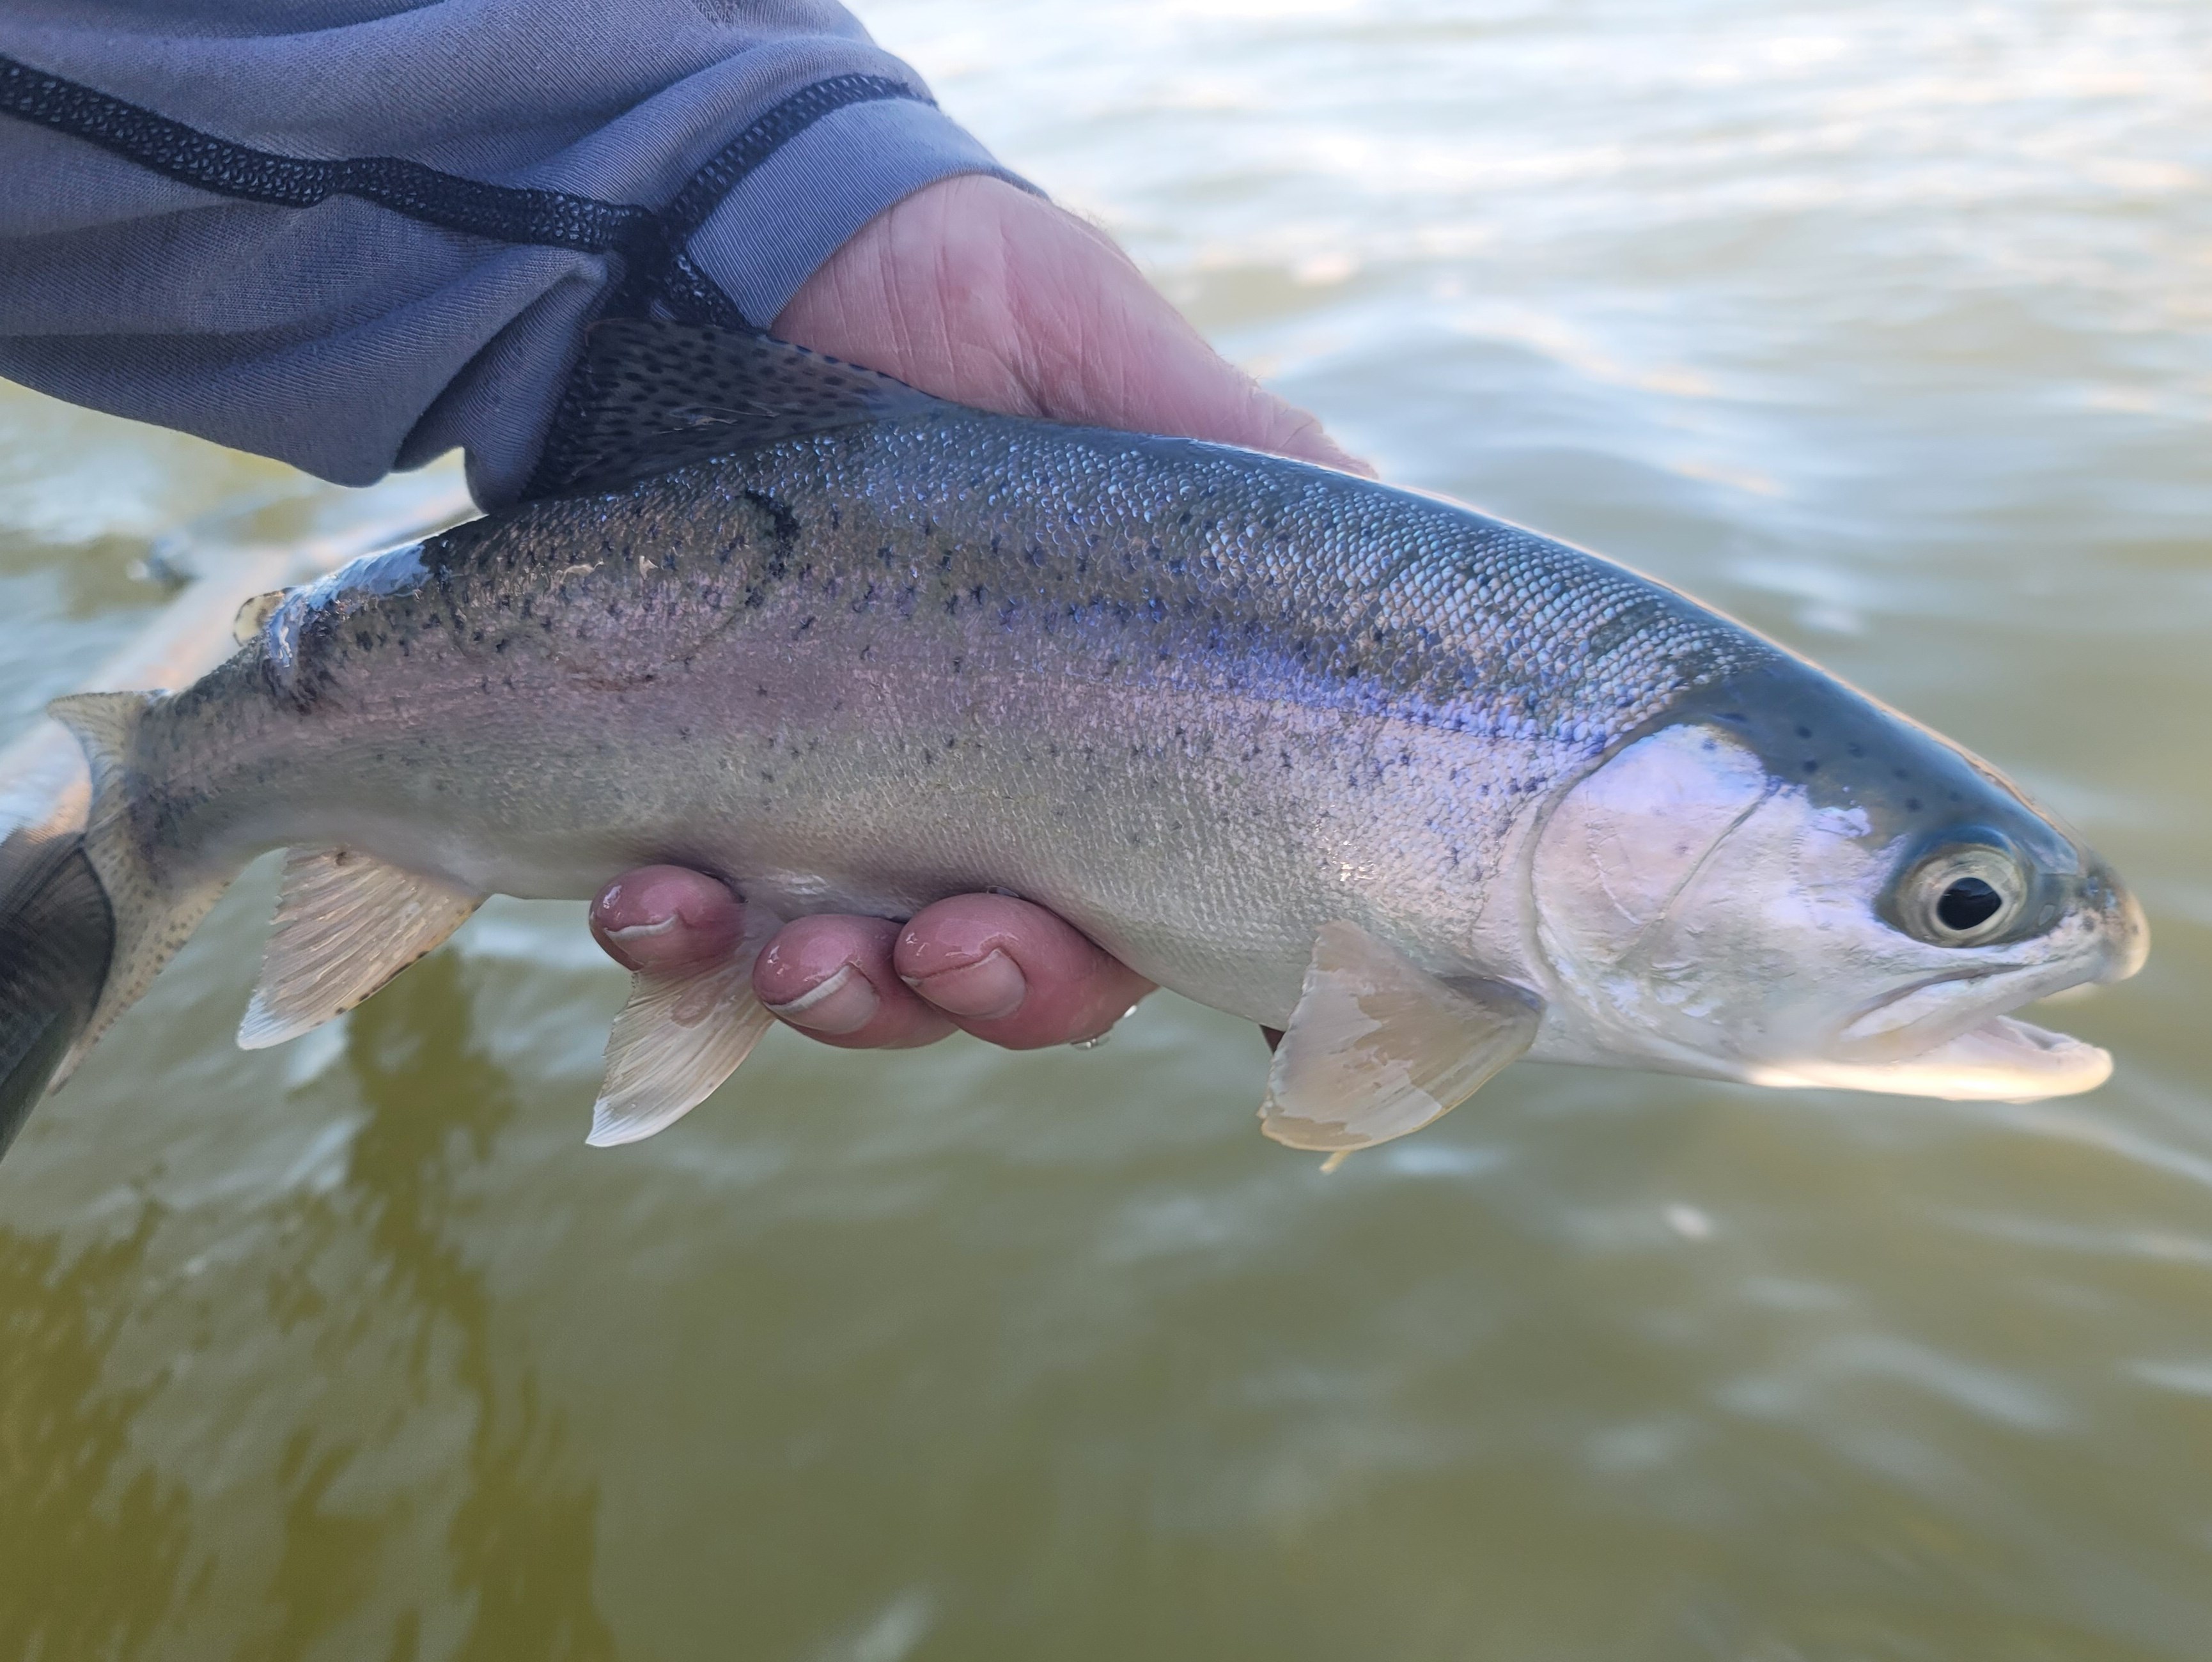 Yuba River Fishing Image